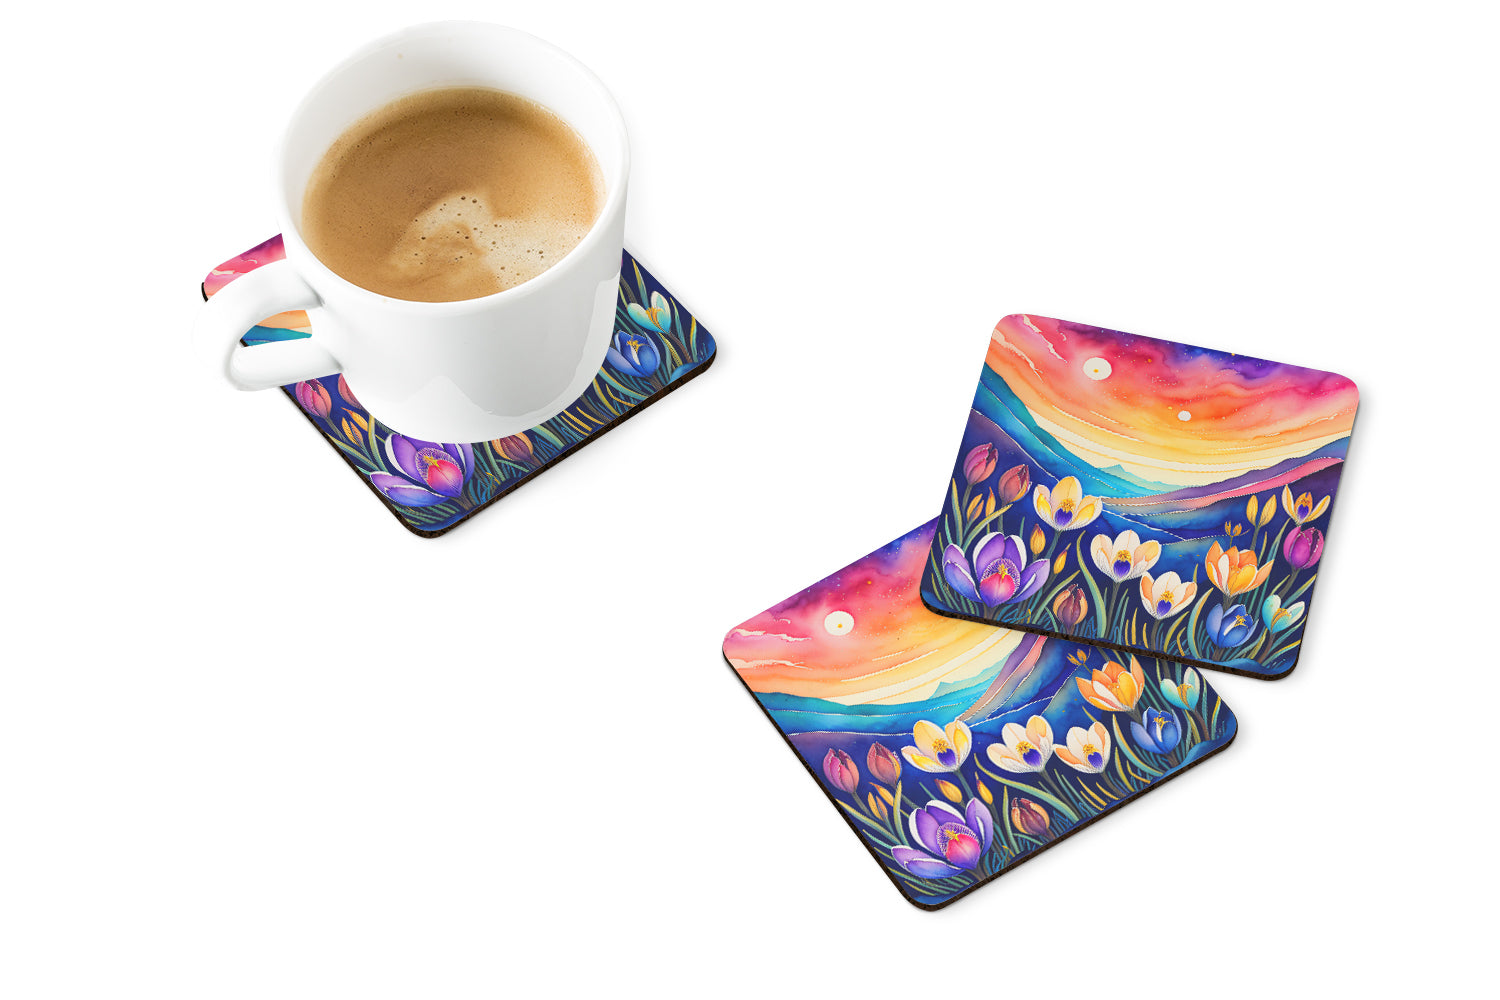 Colorful Crocus Foam Coaster Set of 4